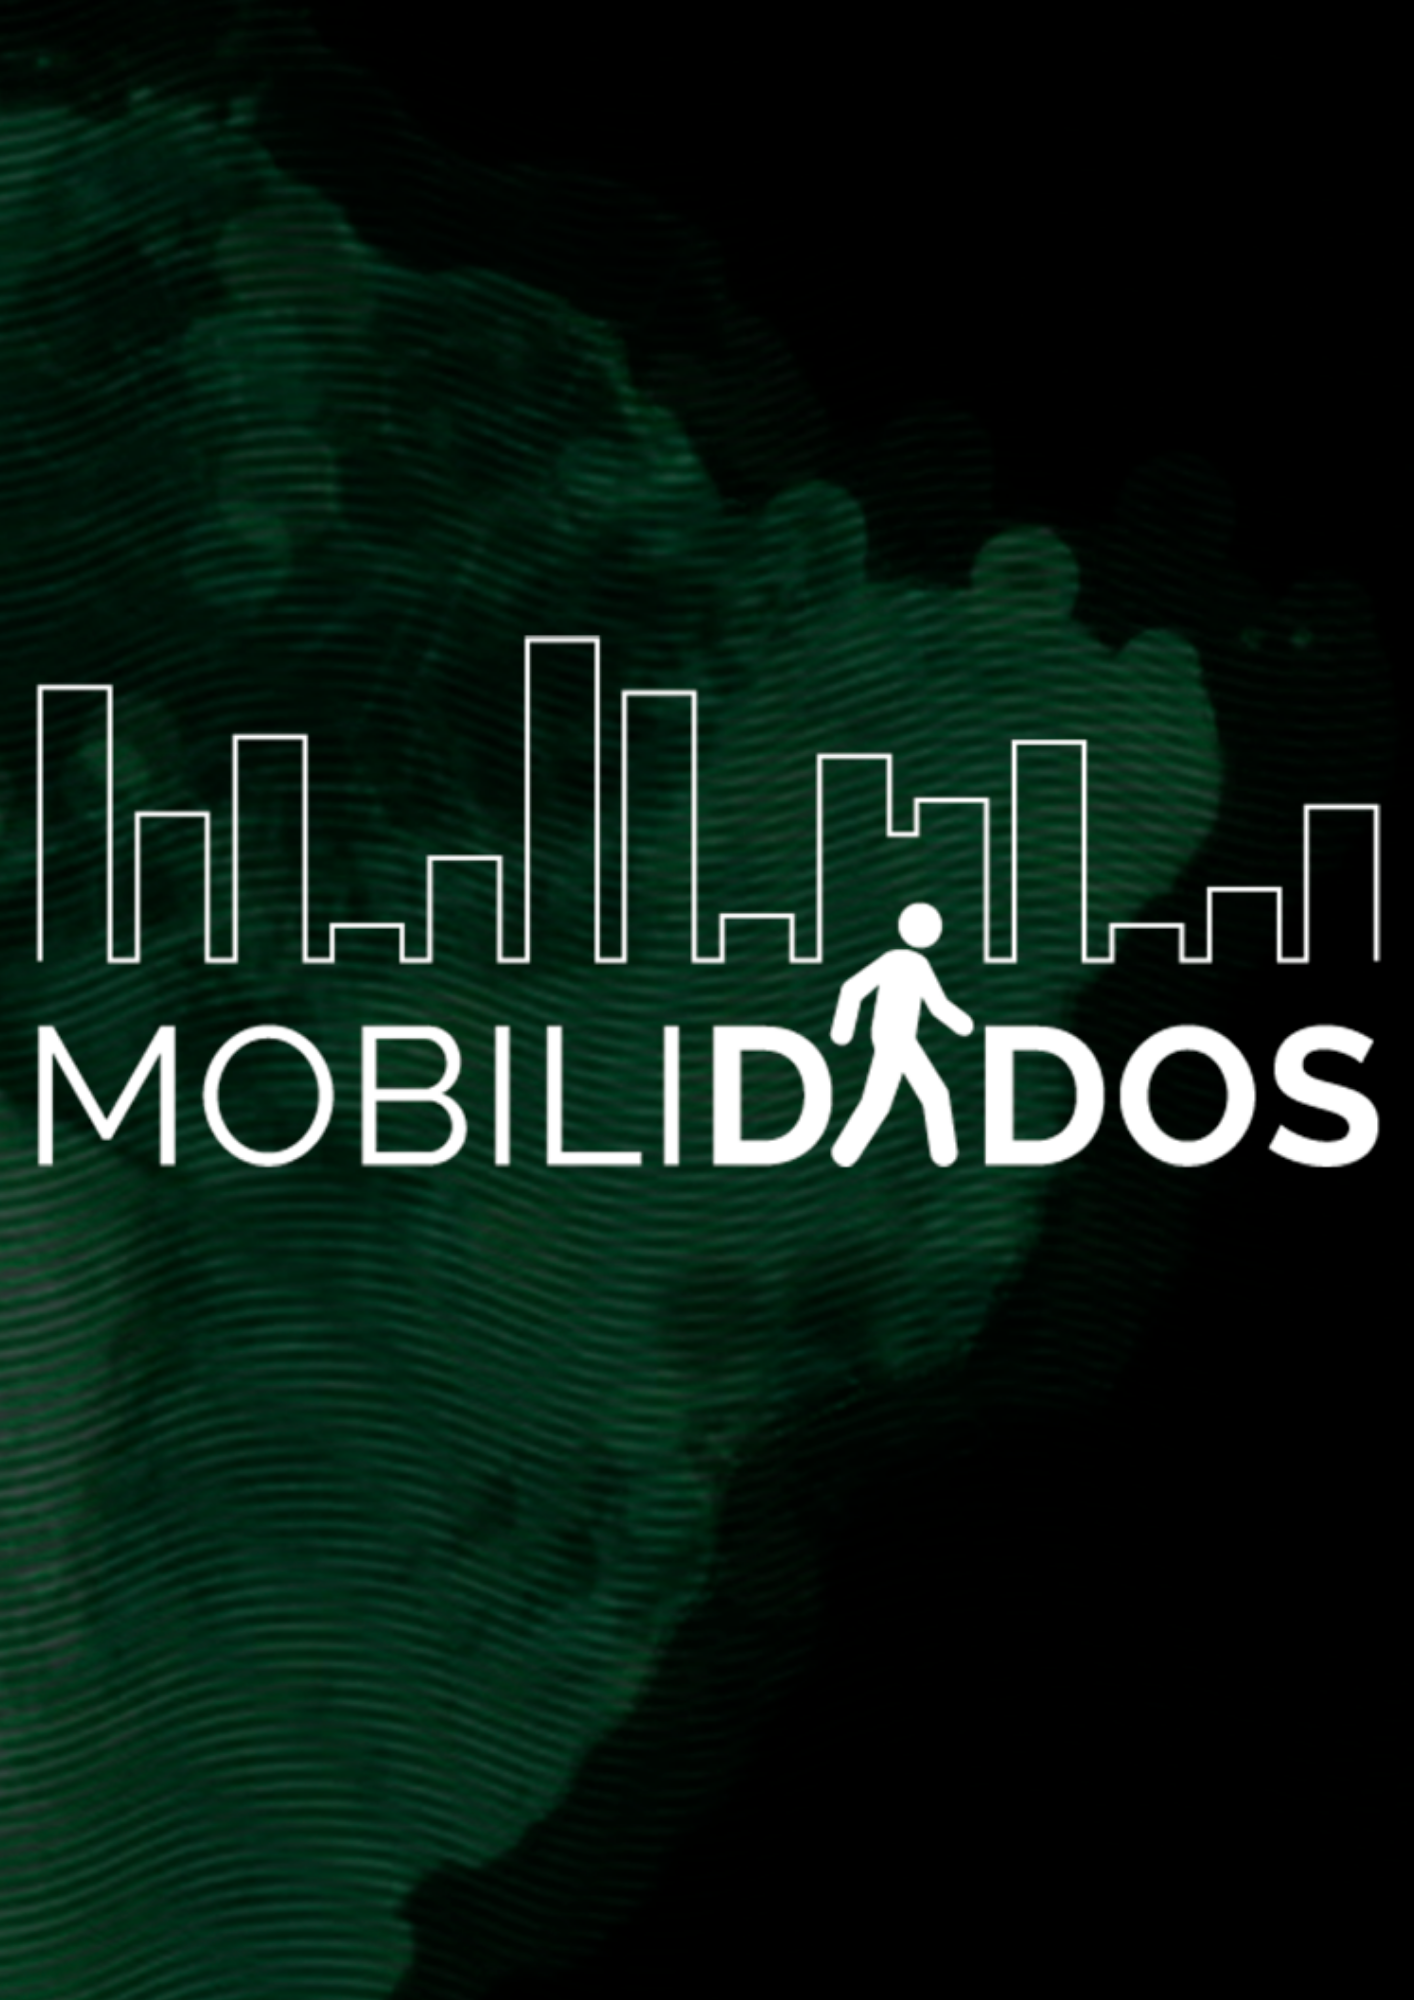 Boletins MobiliDADOS: dados e evidências para o planejamento da mobilidade urbana sustentável